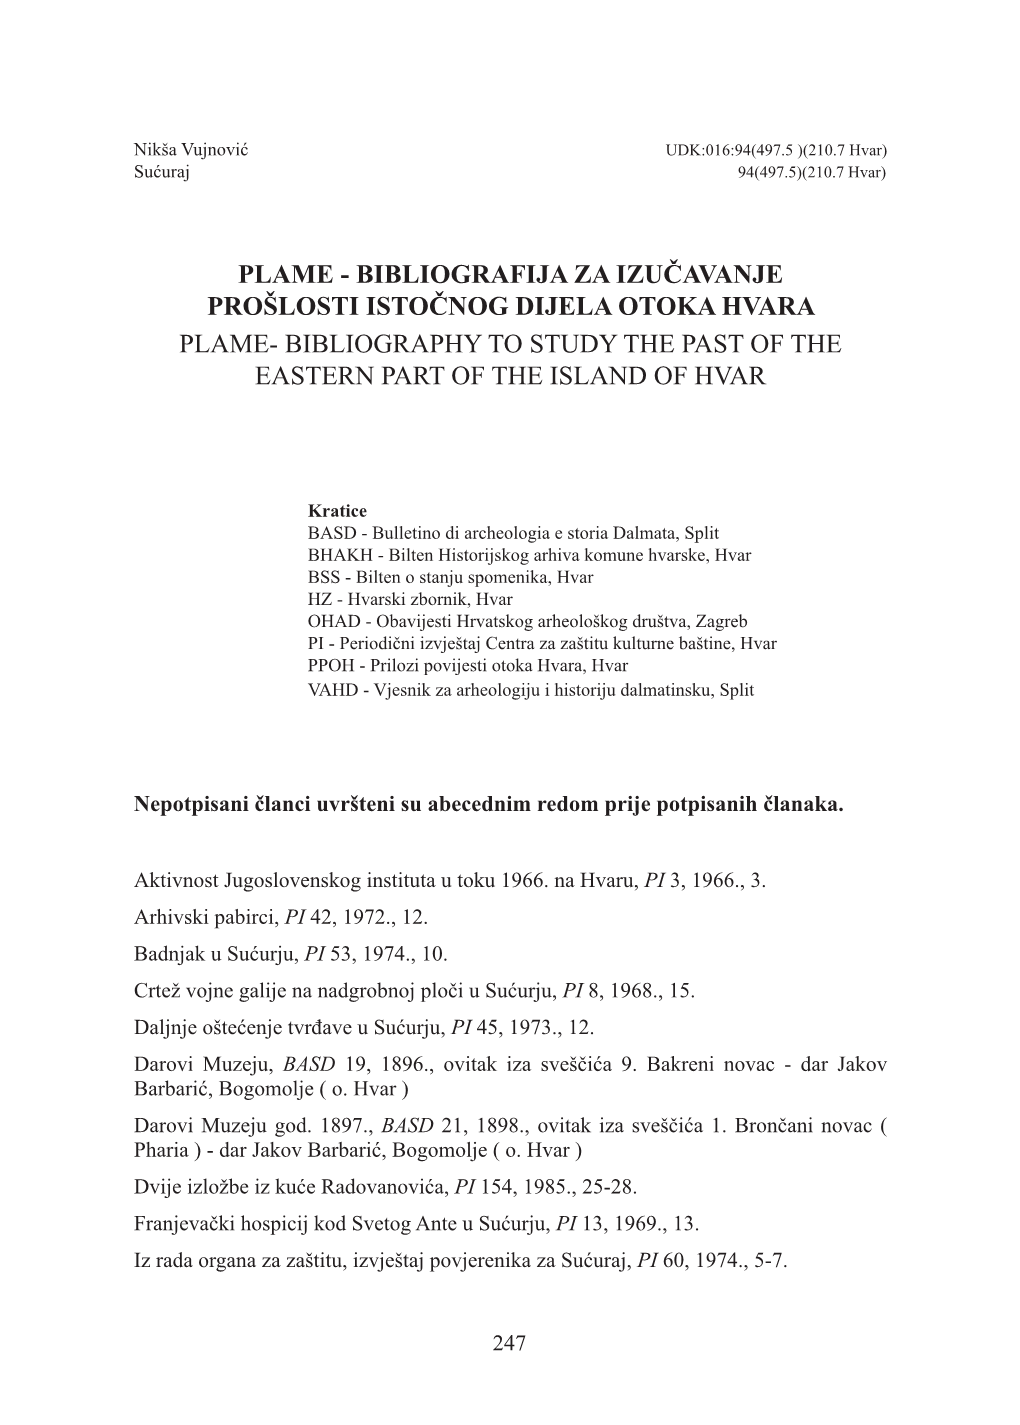 Plame - Bibliografija Za Izučavanje Prošlosti Istočnog Dijela Otoka Hvara PLAME- BIBLIOGRAPHY to STUDY the PAST of the EASTERN PART of the ISLAND of HVAR